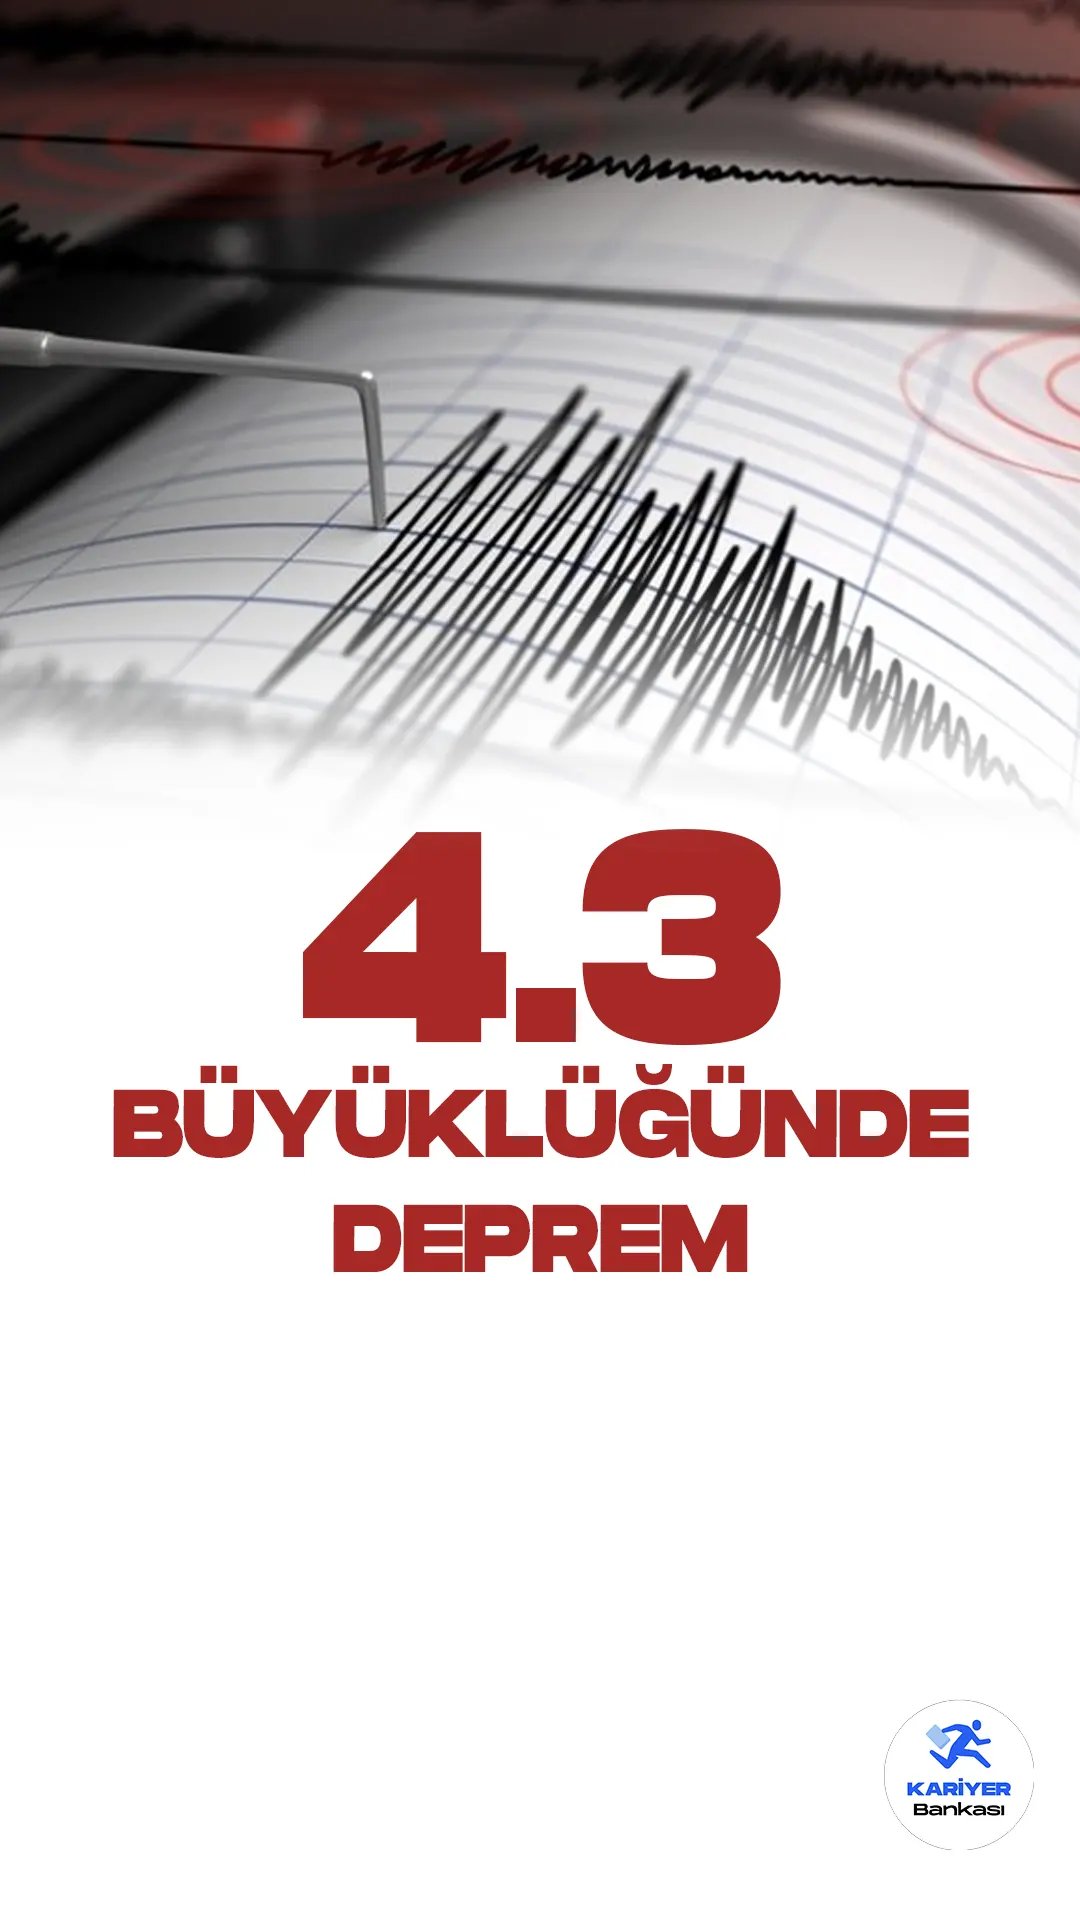 Erzurum'da 4.3 Büyüklüğünde Deprem Oldu. Boğaziçi Üniversitesi Kandilli Rasathanesi ve Deprem Araştırma Enstitüsü ve İçişleri Bakanlığı Afet ve Acil Durum Yönetimi Başkanlığı resmi sayfalarından, Erzurum ilinin Aşkale ilçesinde 4.3 büyüklüğünde deprem meydana geldiği aktarıldı.